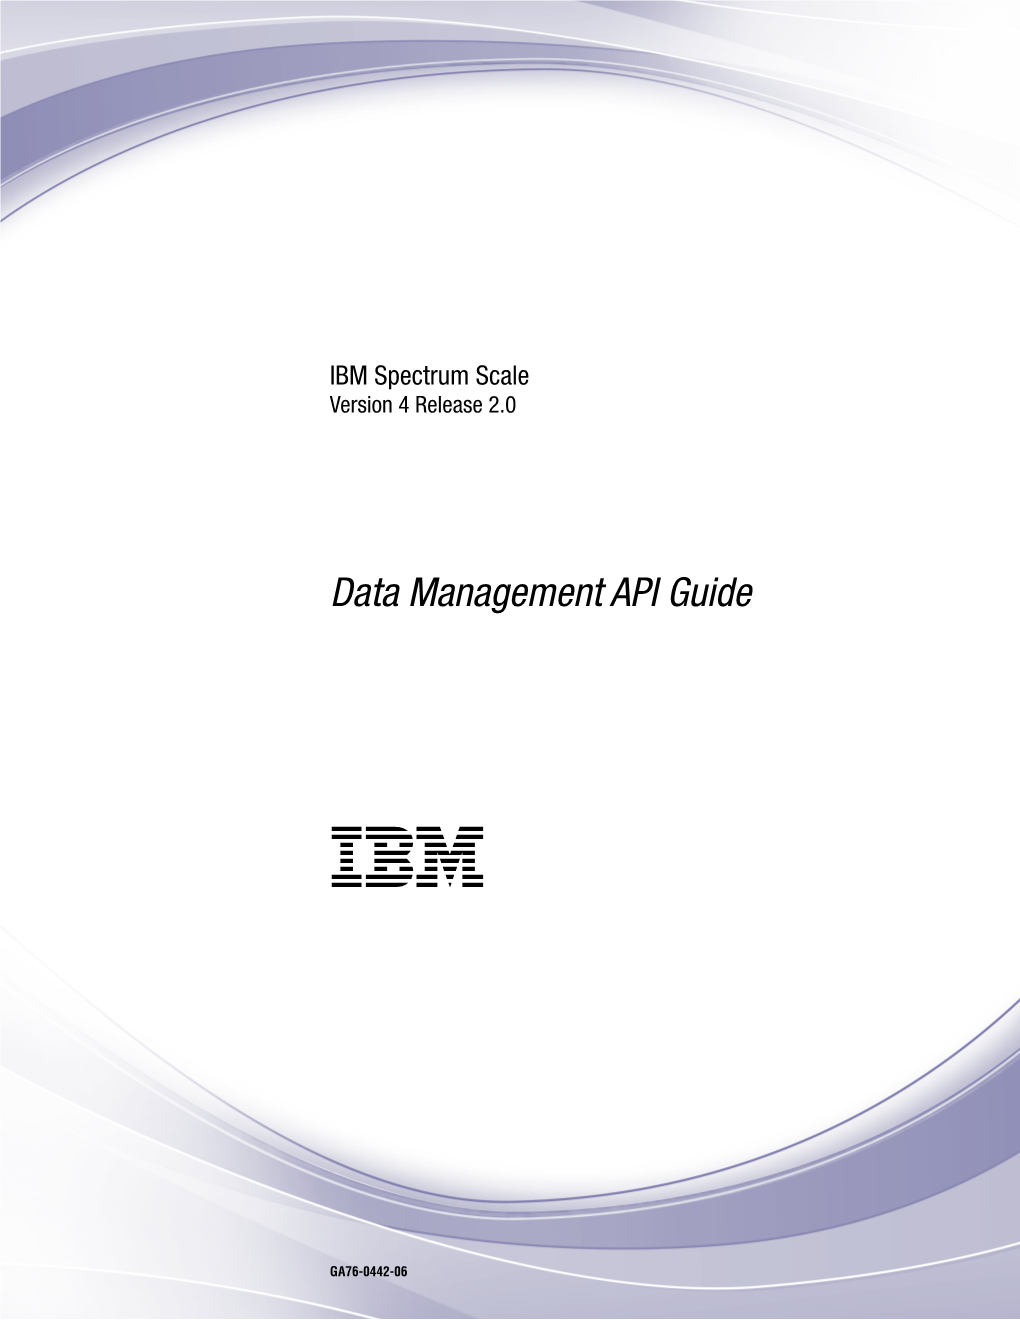 IBM Spectrum Scale 4.2: Data Management API Guide Figures